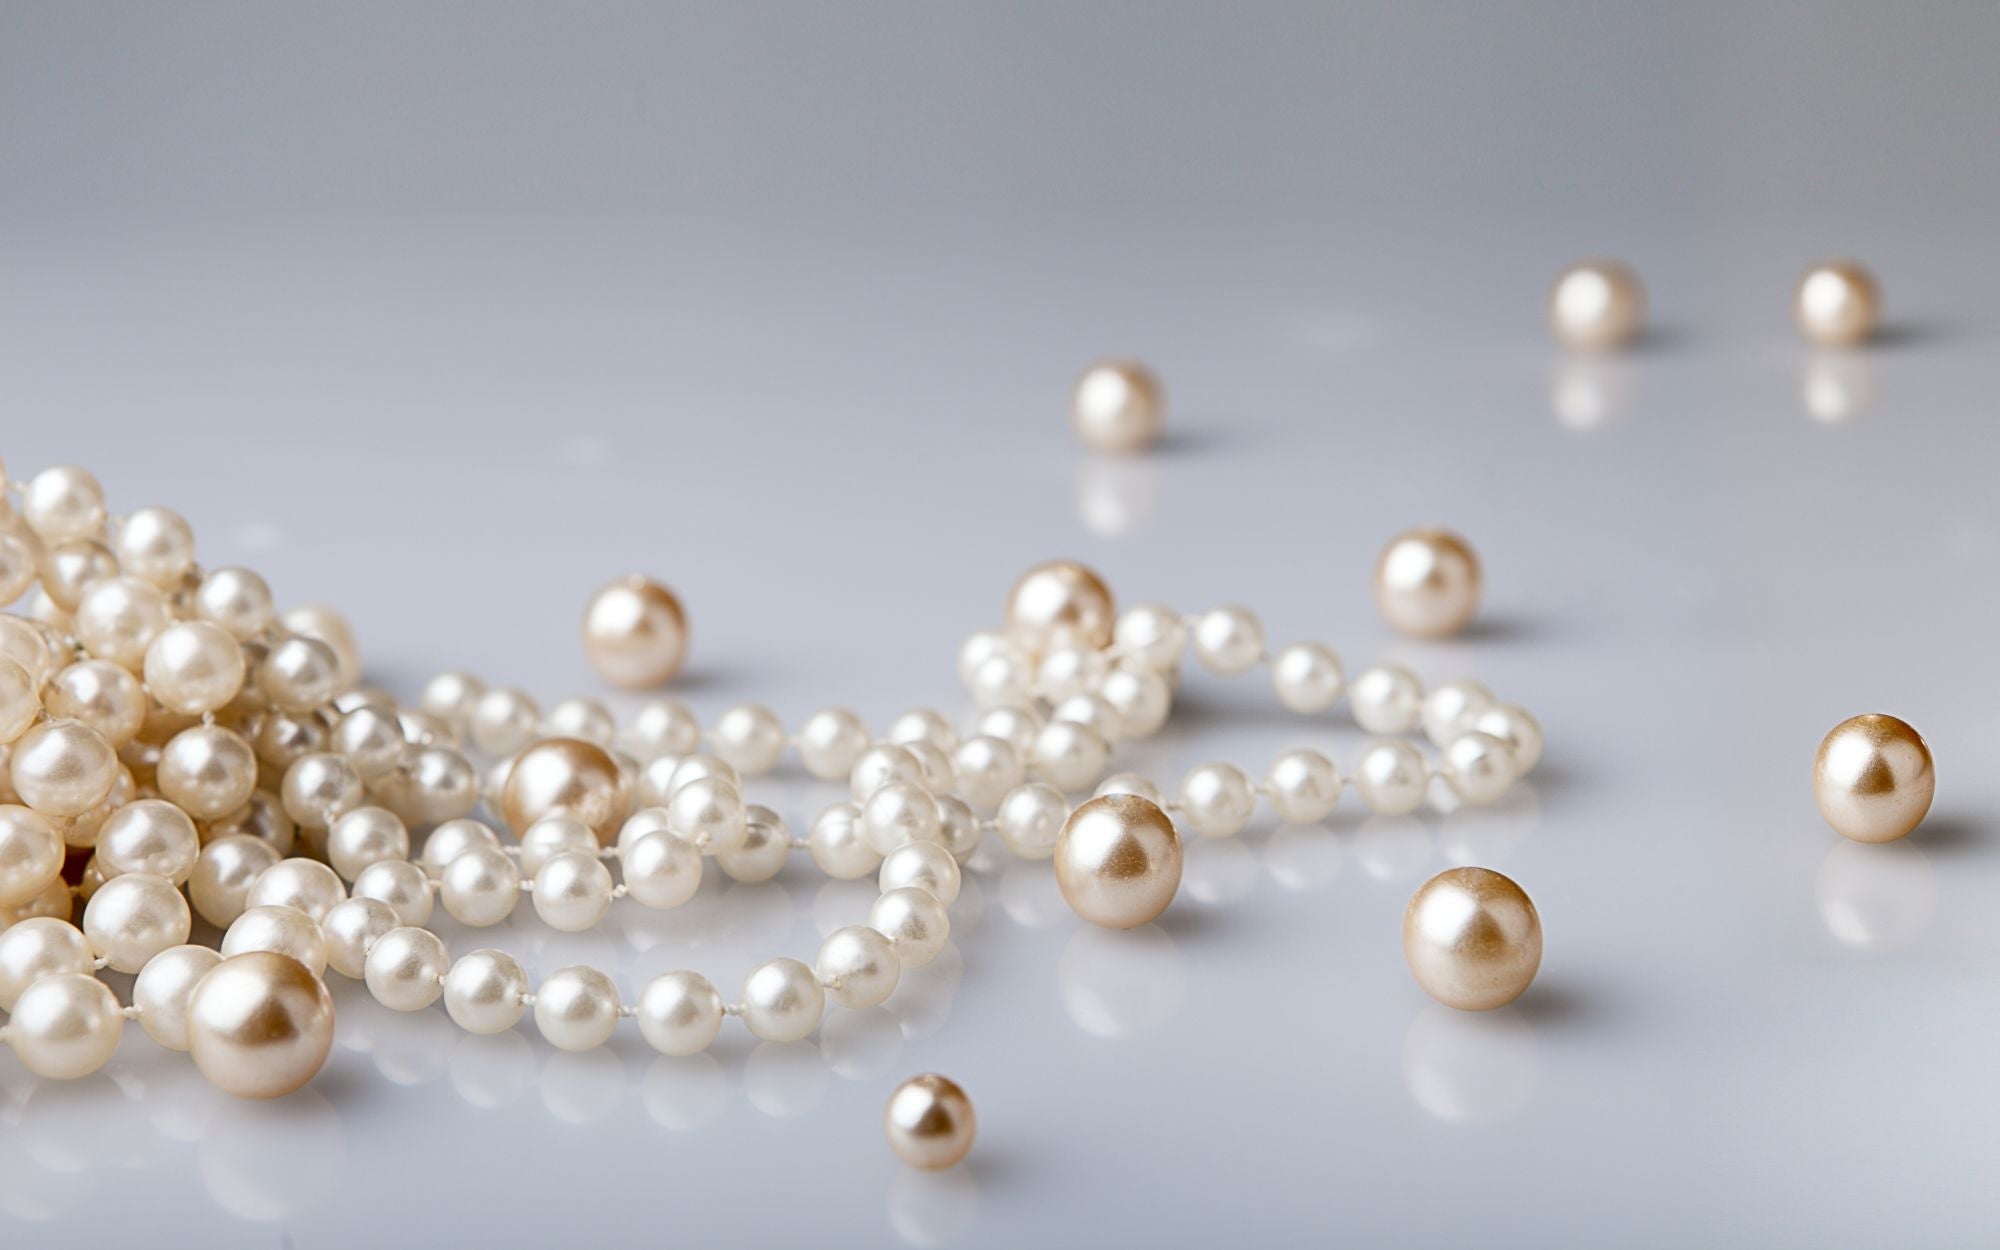 Wie viel sind Perlen wert - Perlenwert